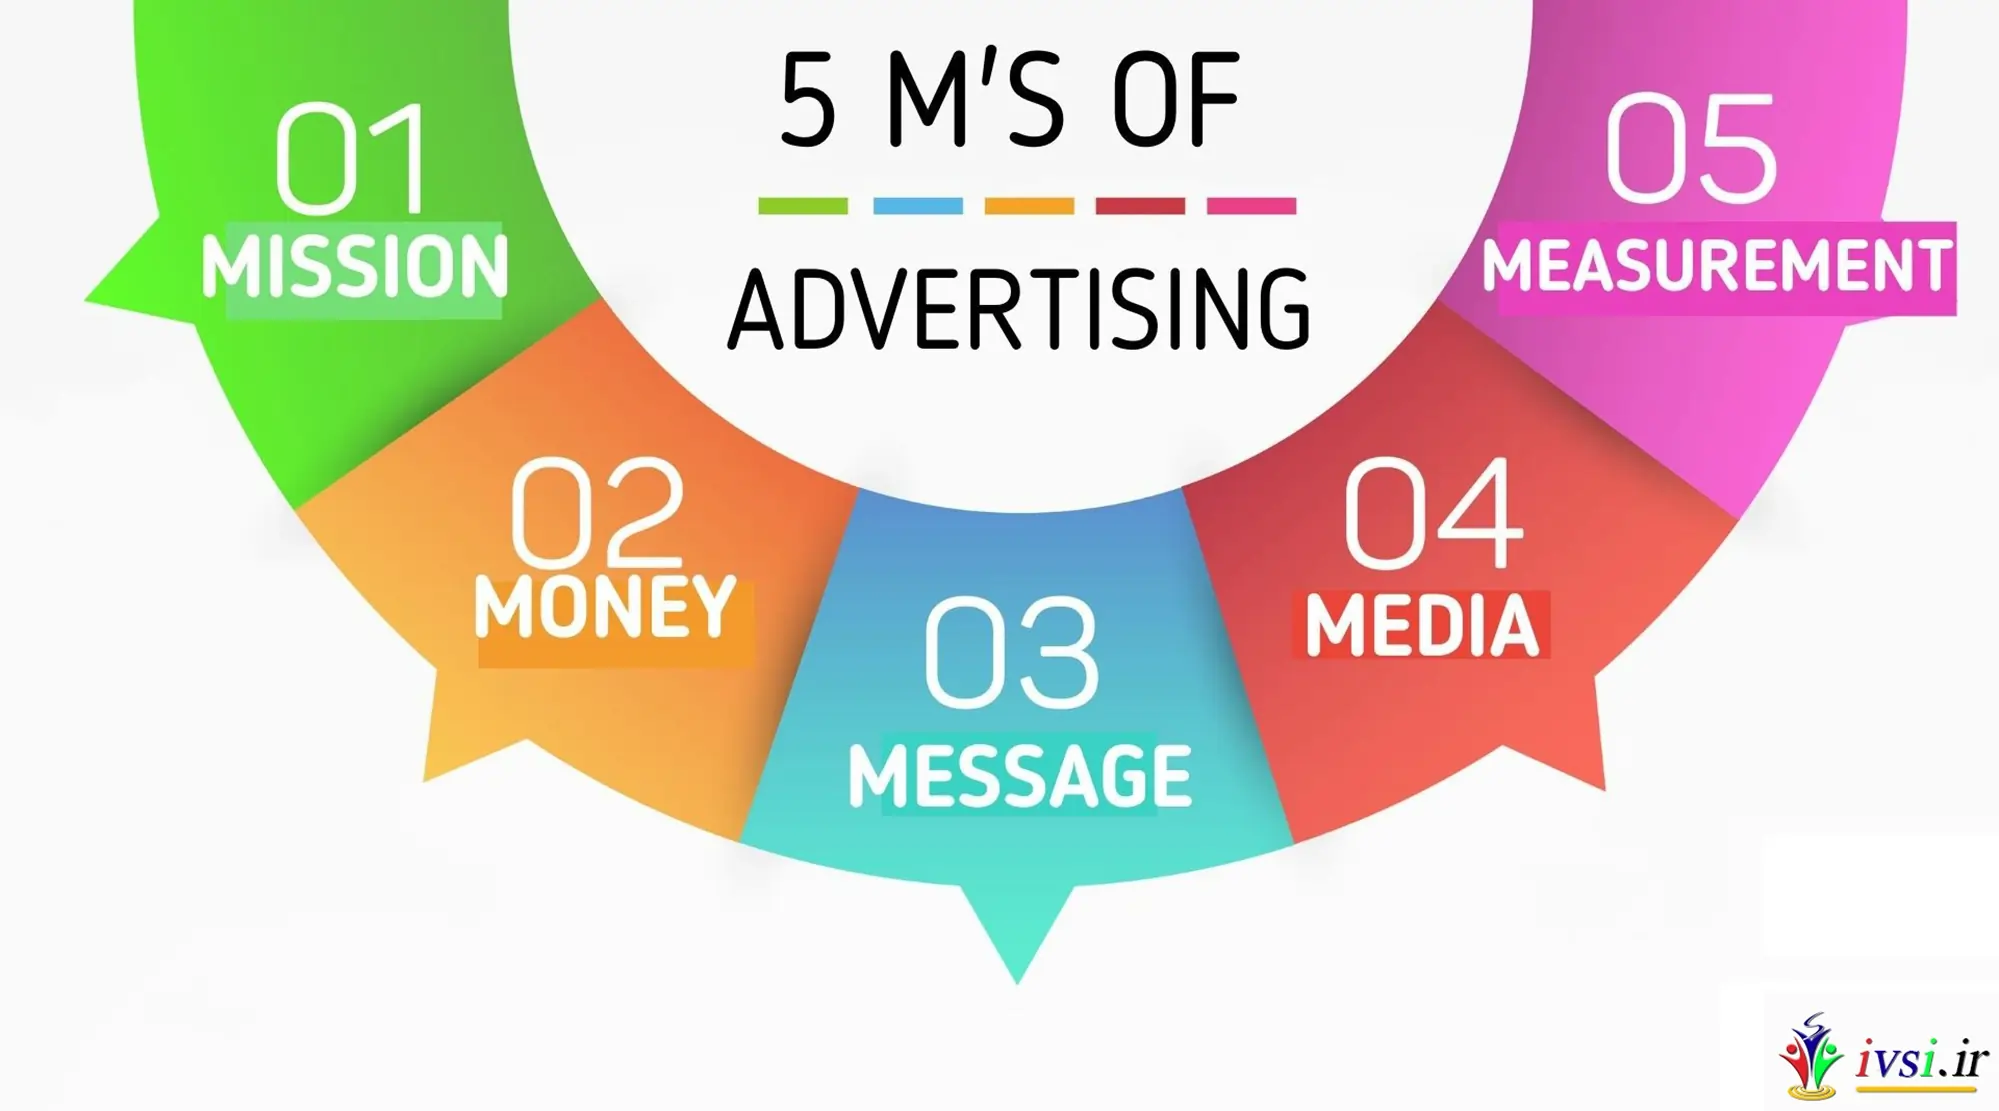 مدل 5 M از تبلیغات (تعریف و عناصر)